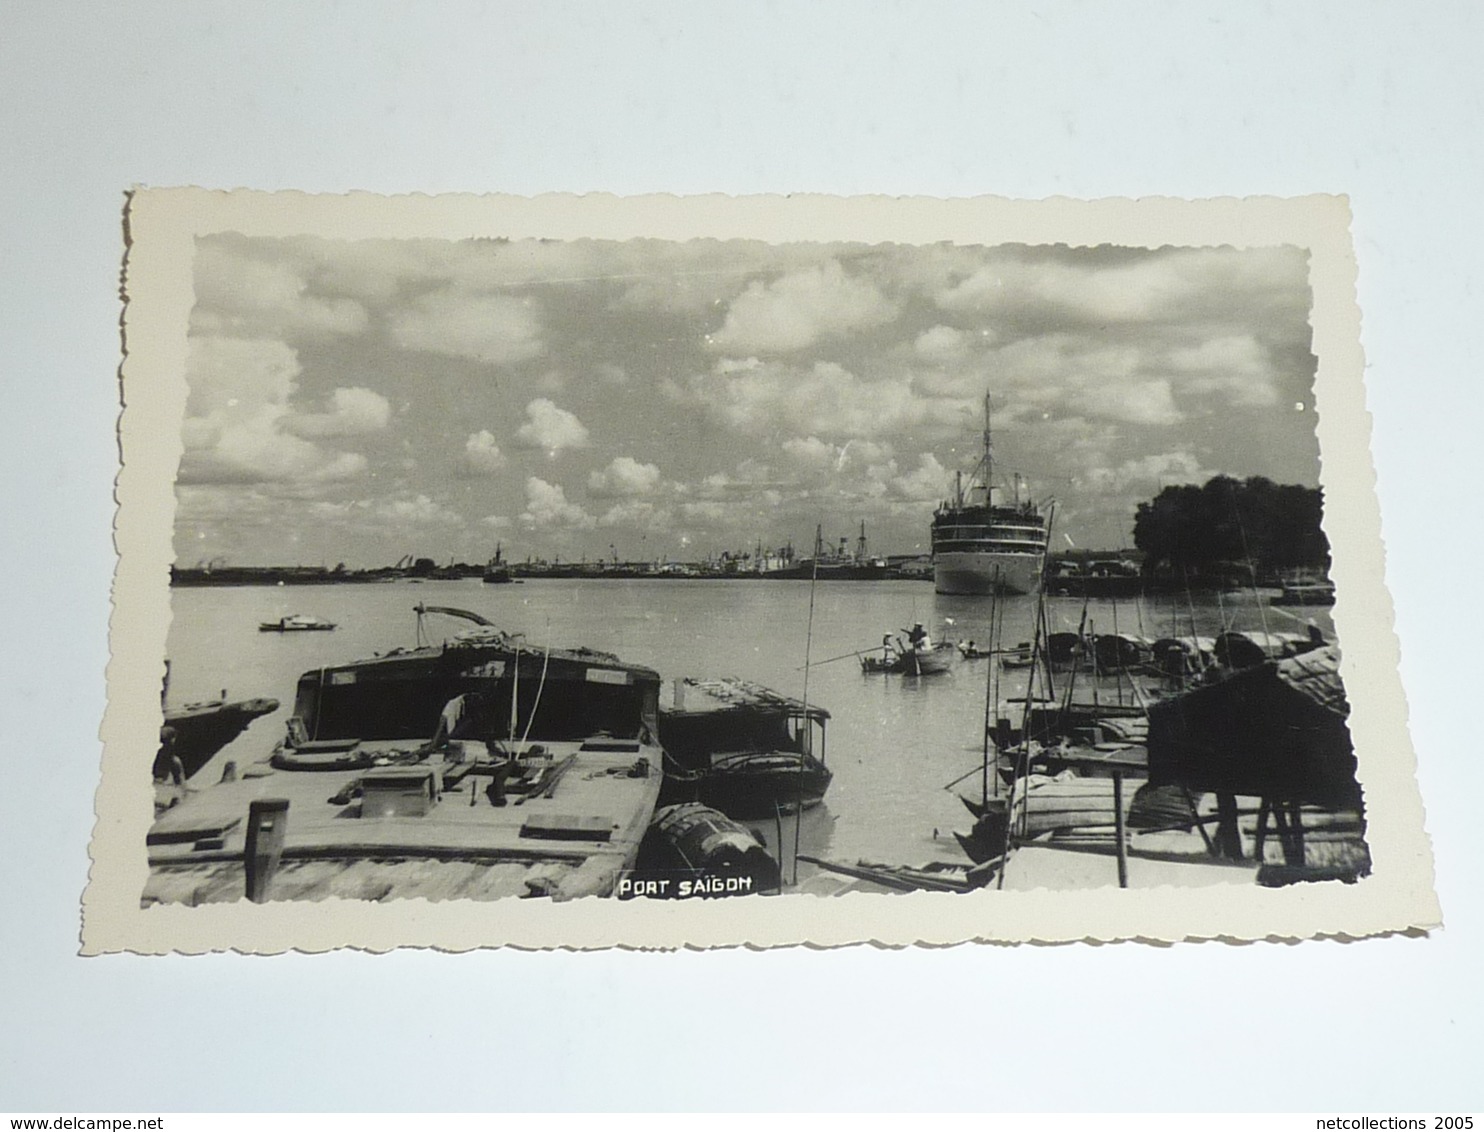 VIETNAM - SAIGON SUPERBE Ensemble de 18 cartes, photos - le port bateaux de commerce jardin centre ville...- ASIE (AC)